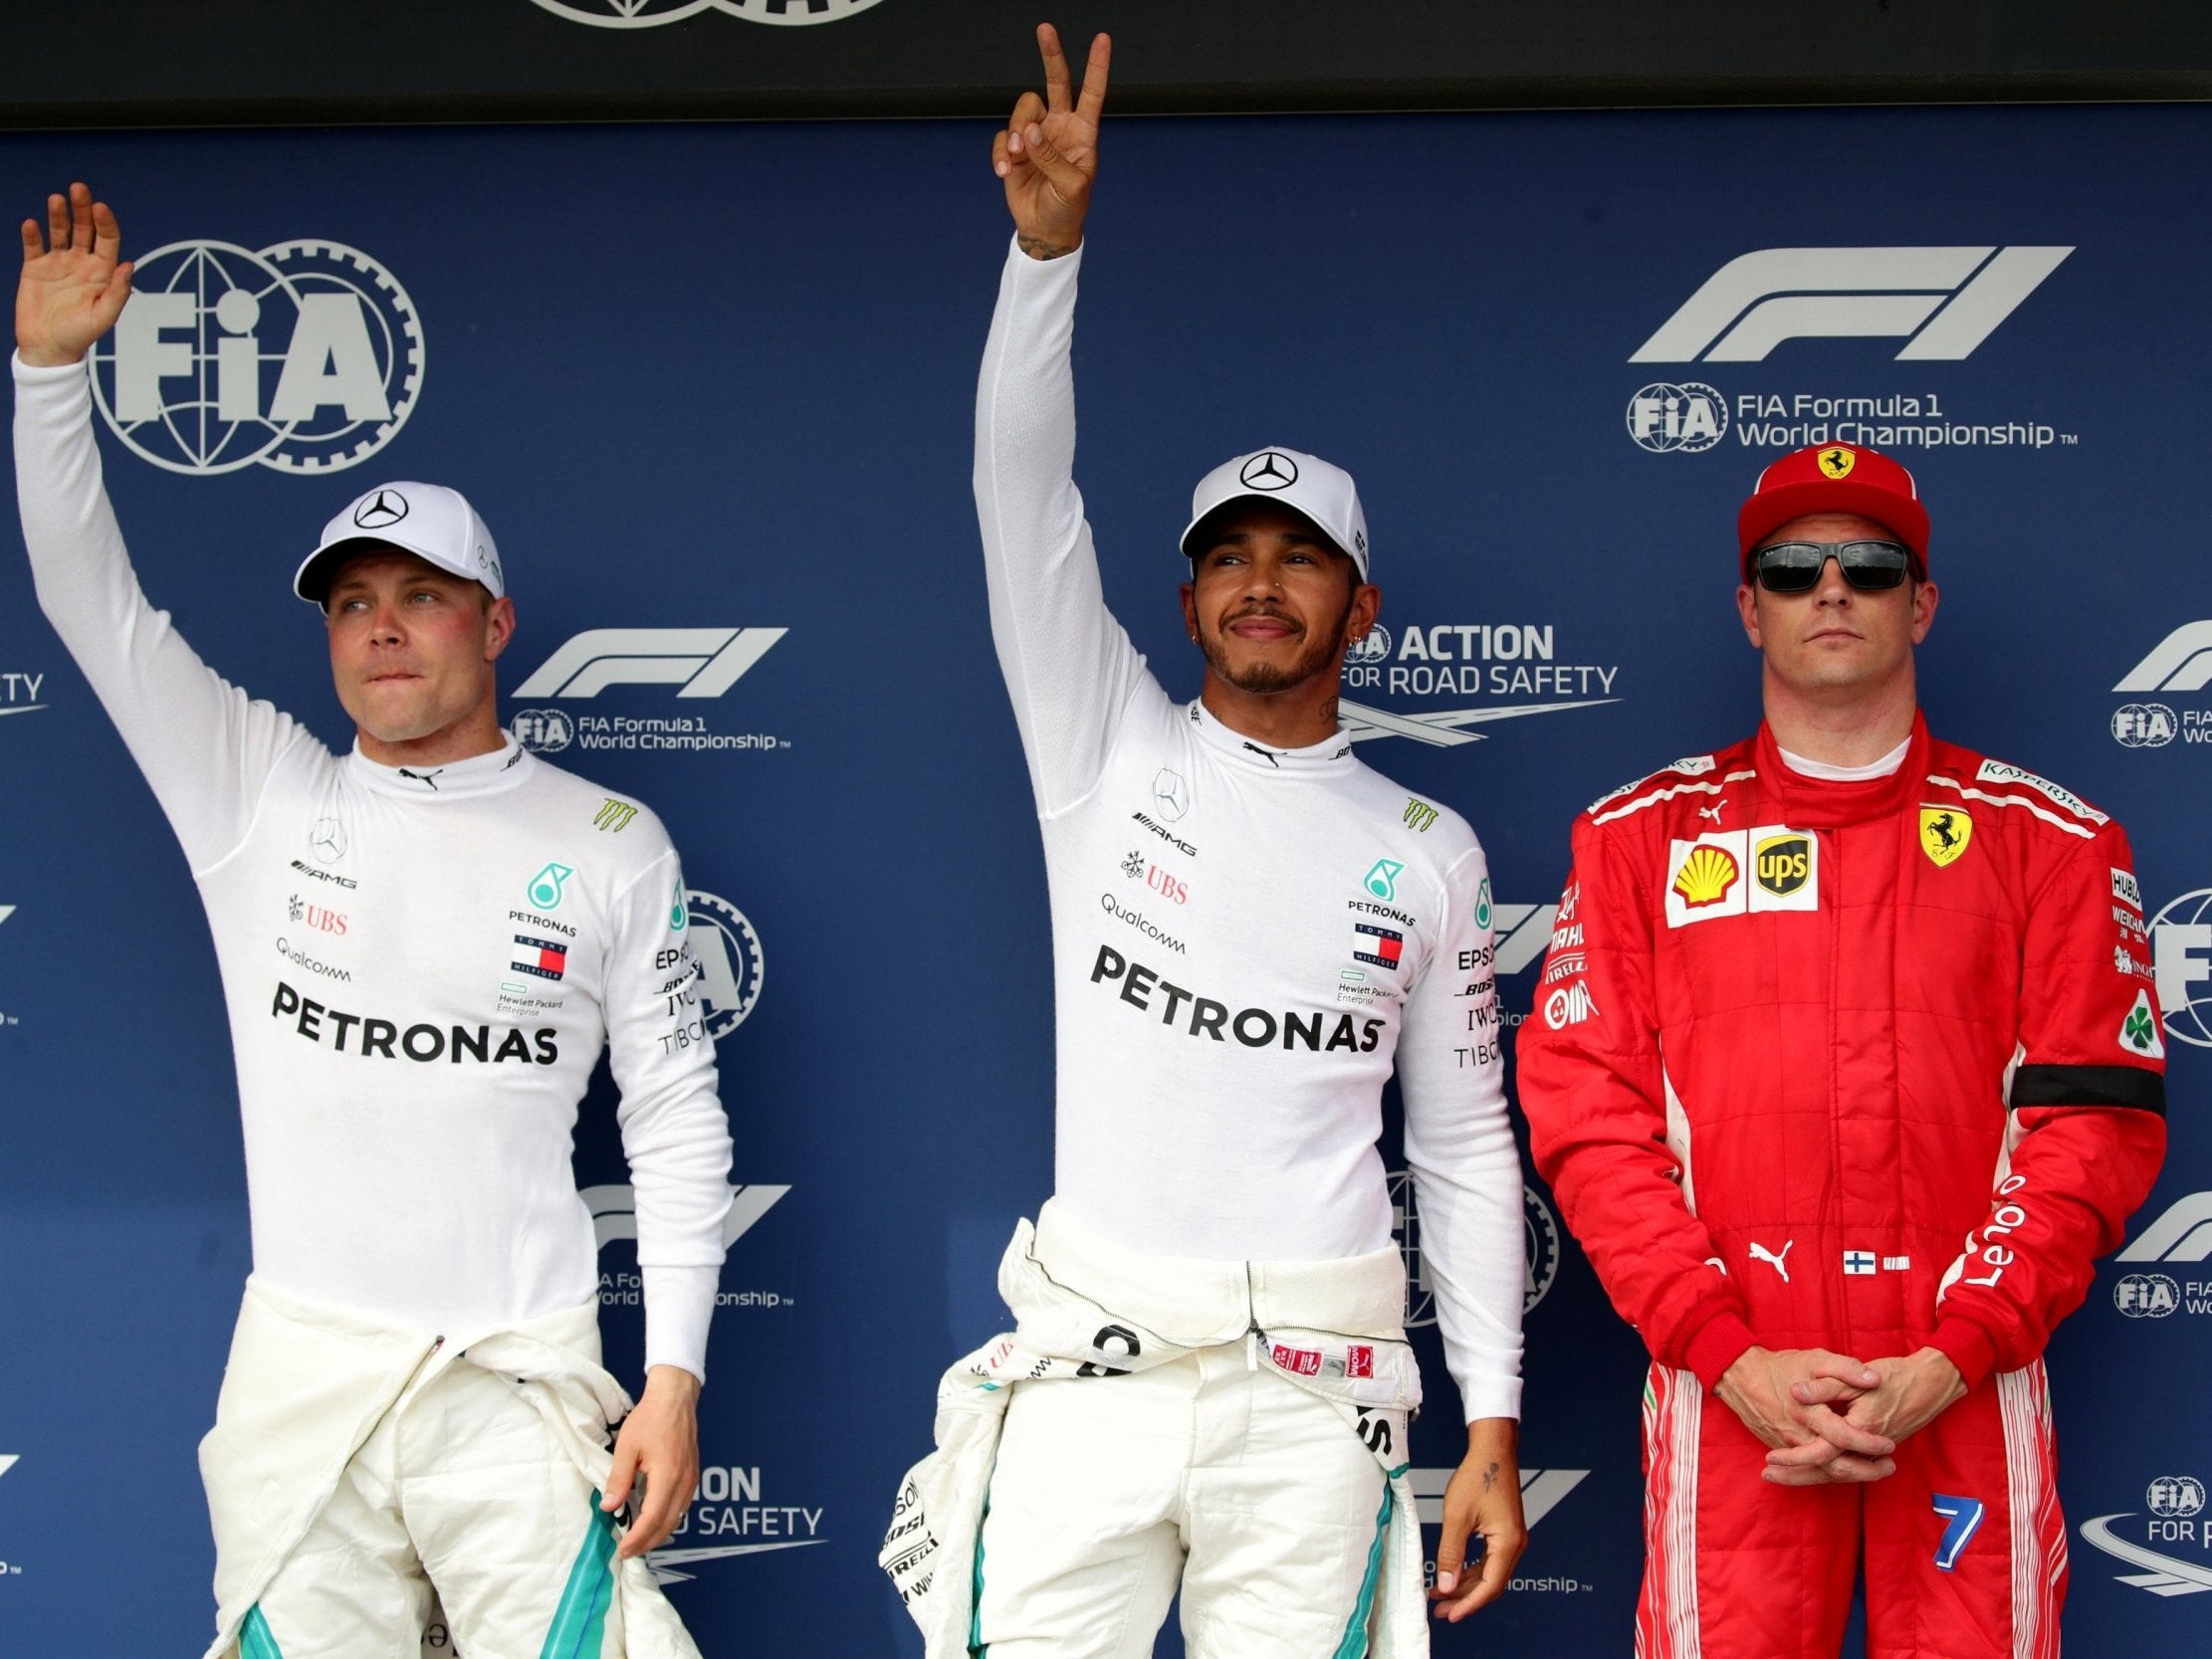 Lewis Hamilton celebrates after taking pole position ahead of Valtteri Bottas and Kimi Raikkonen